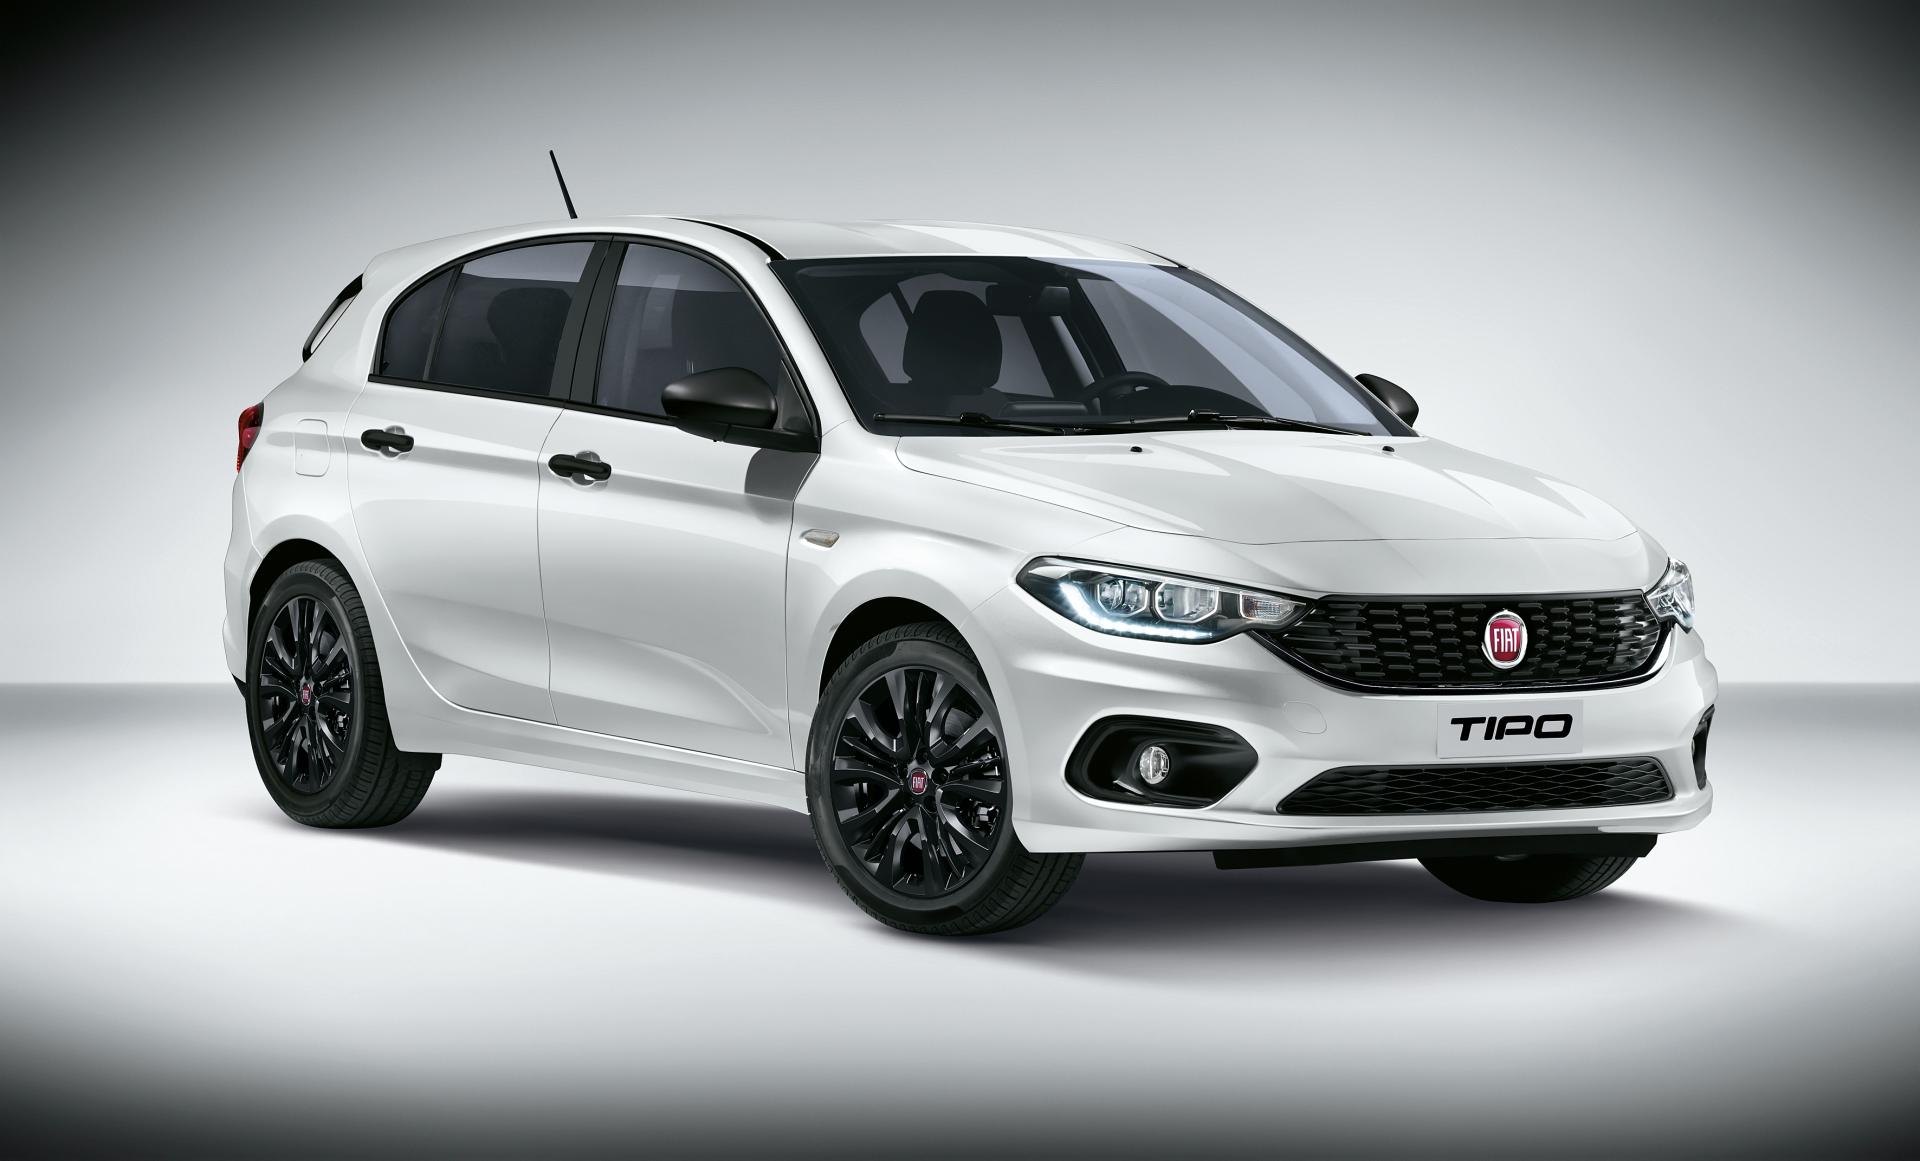 Chcesz kupić nowego Fiata Tipo 2020? Z tym pakietem Fiat